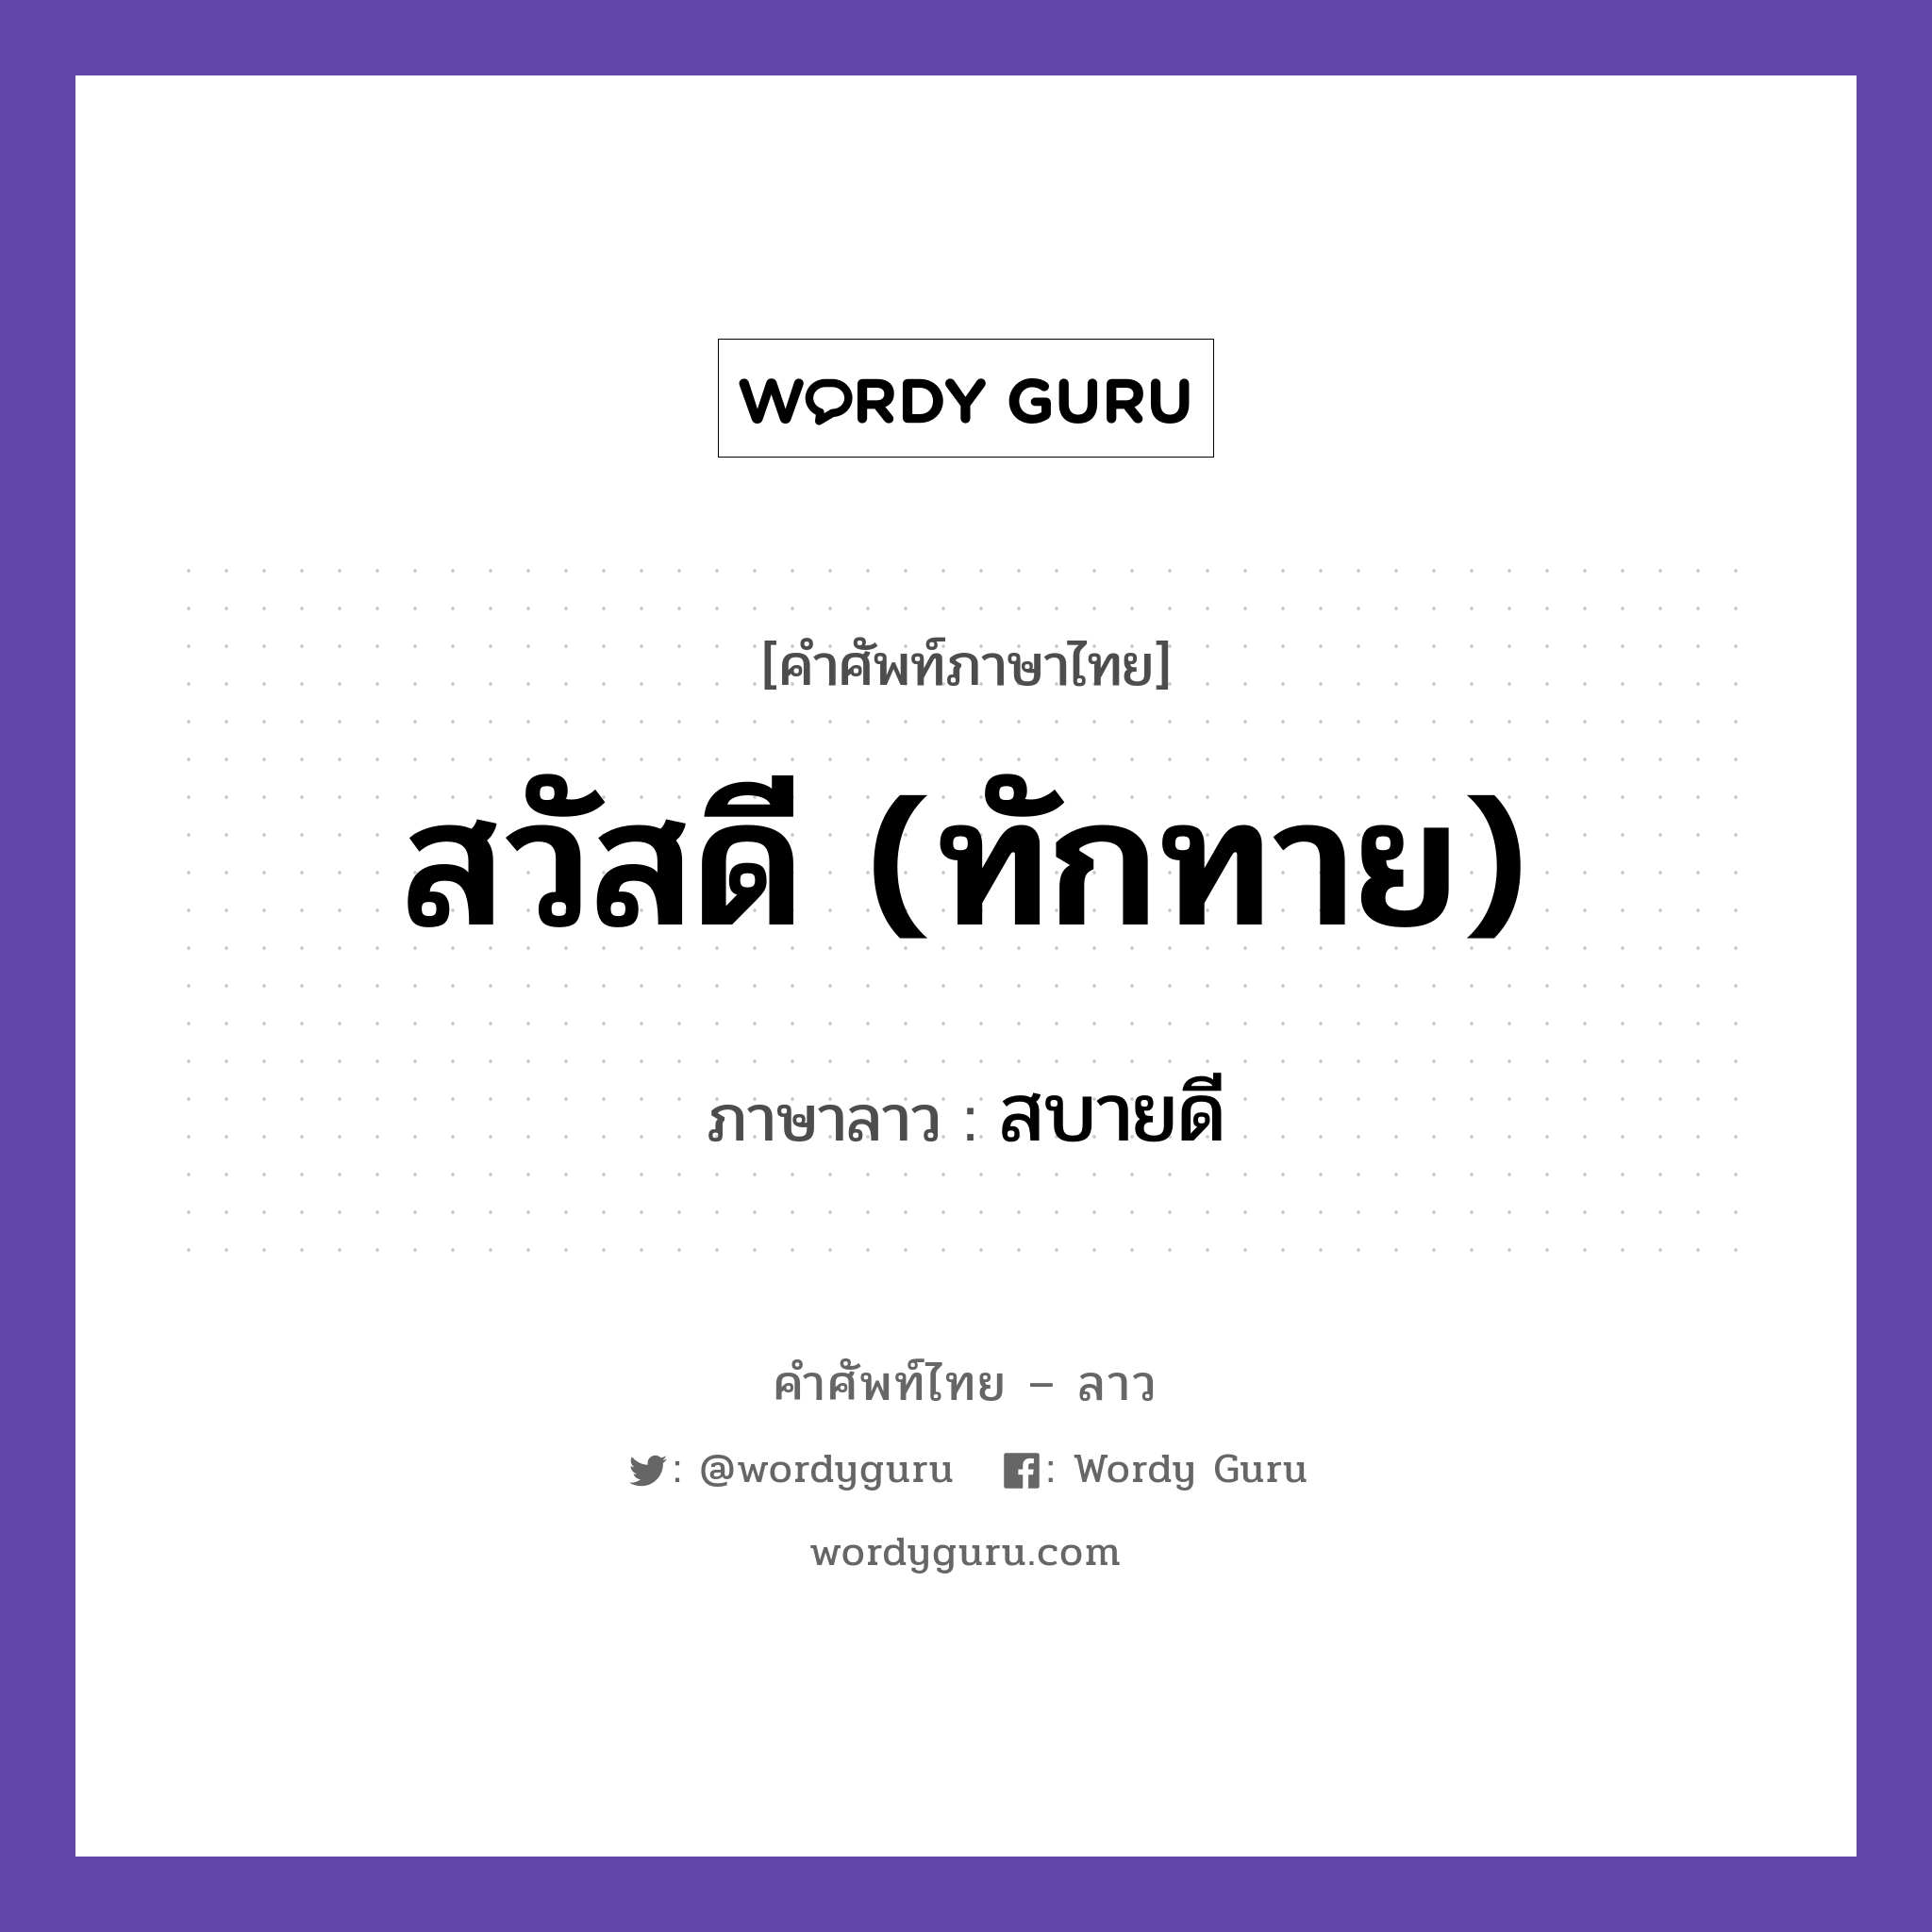 สวัสดี (ทักทาย) ภาษาลาวคืออะไร, คำศัพท์ภาษาไทย - ลาว สวัสดี (ทักทาย) ภาษาลาว สบายดี หมวด การทักทาย-คำขึ้นต้น คำลงท้าย หมวด การทักทาย-คำขึ้นต้น คำลงท้าย